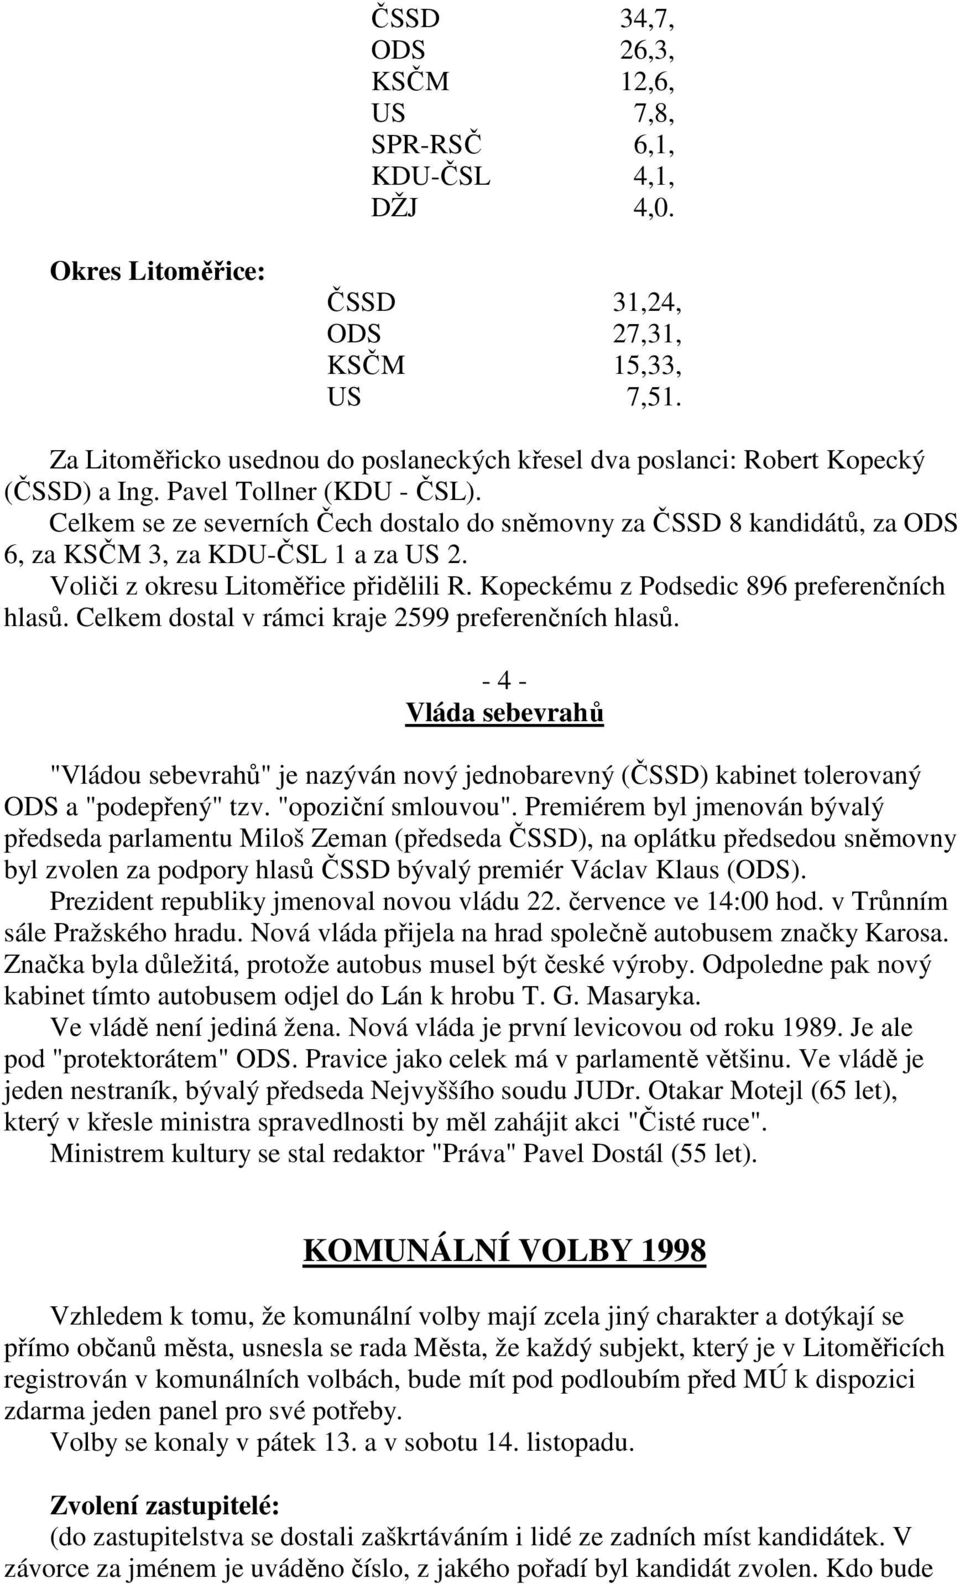 Celkem se ze severních Čech dostalo do sněmovny za ČSSD 8 kandidátů, za ODS 6, za KSČM 3, za KDU-ČSL 1 a za US 2. Voliči z okresu Litoměřice přidělili R. Kopeckému z Podsedic 896 preferenčních hlasů.